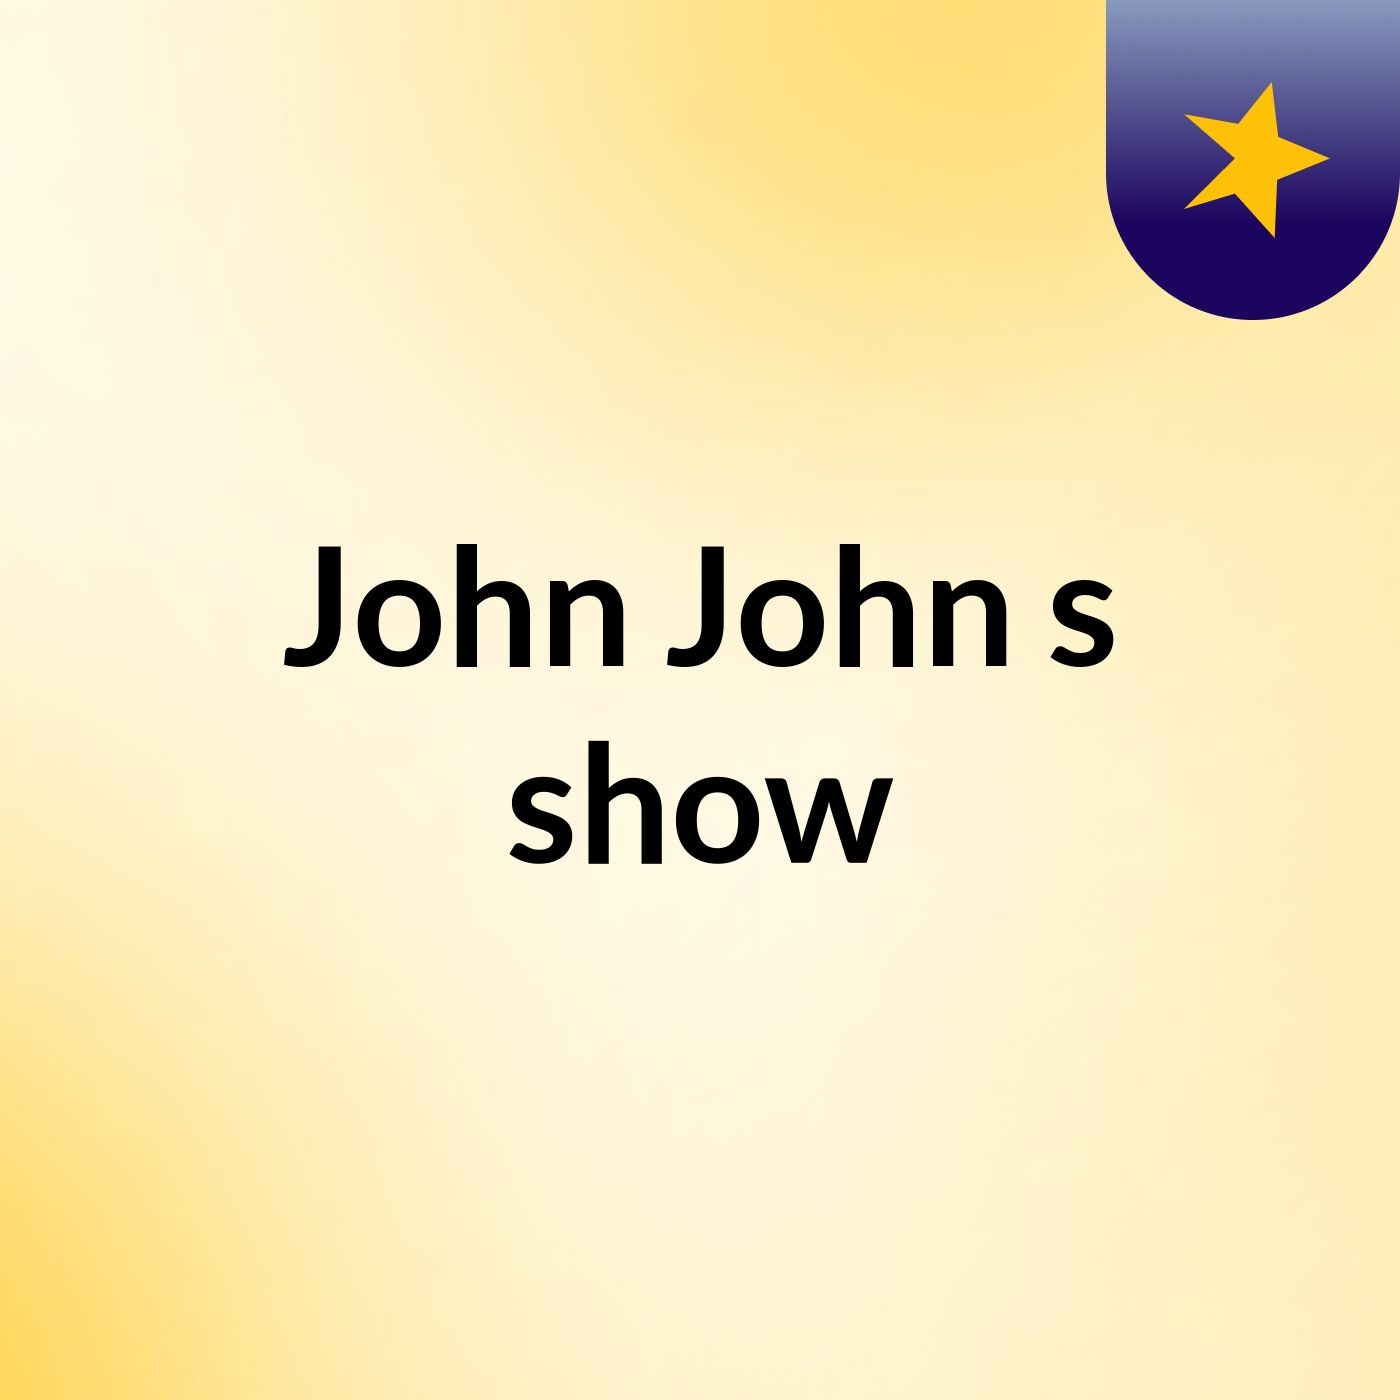 John John's show